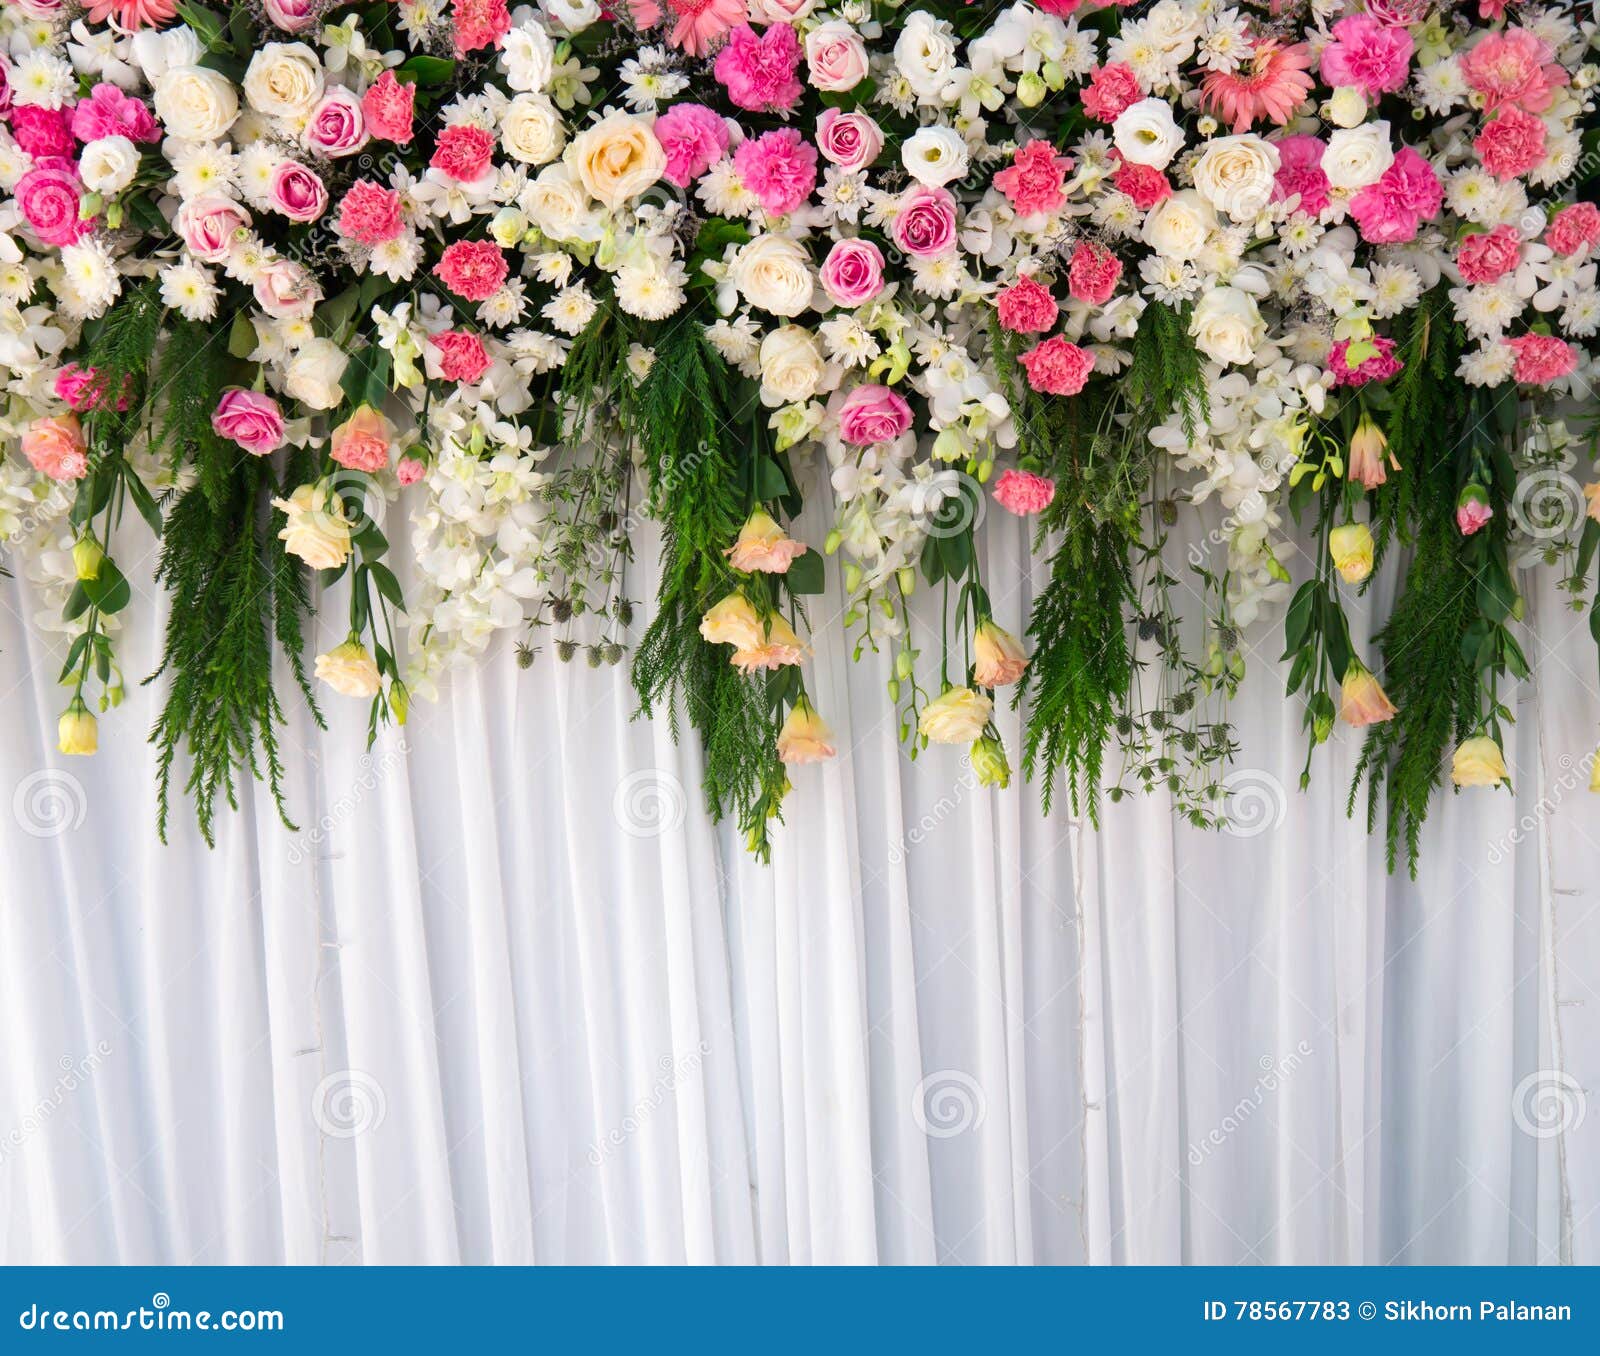 Backdrop Wedding, Wedding Background Stock Image - Image of background ...